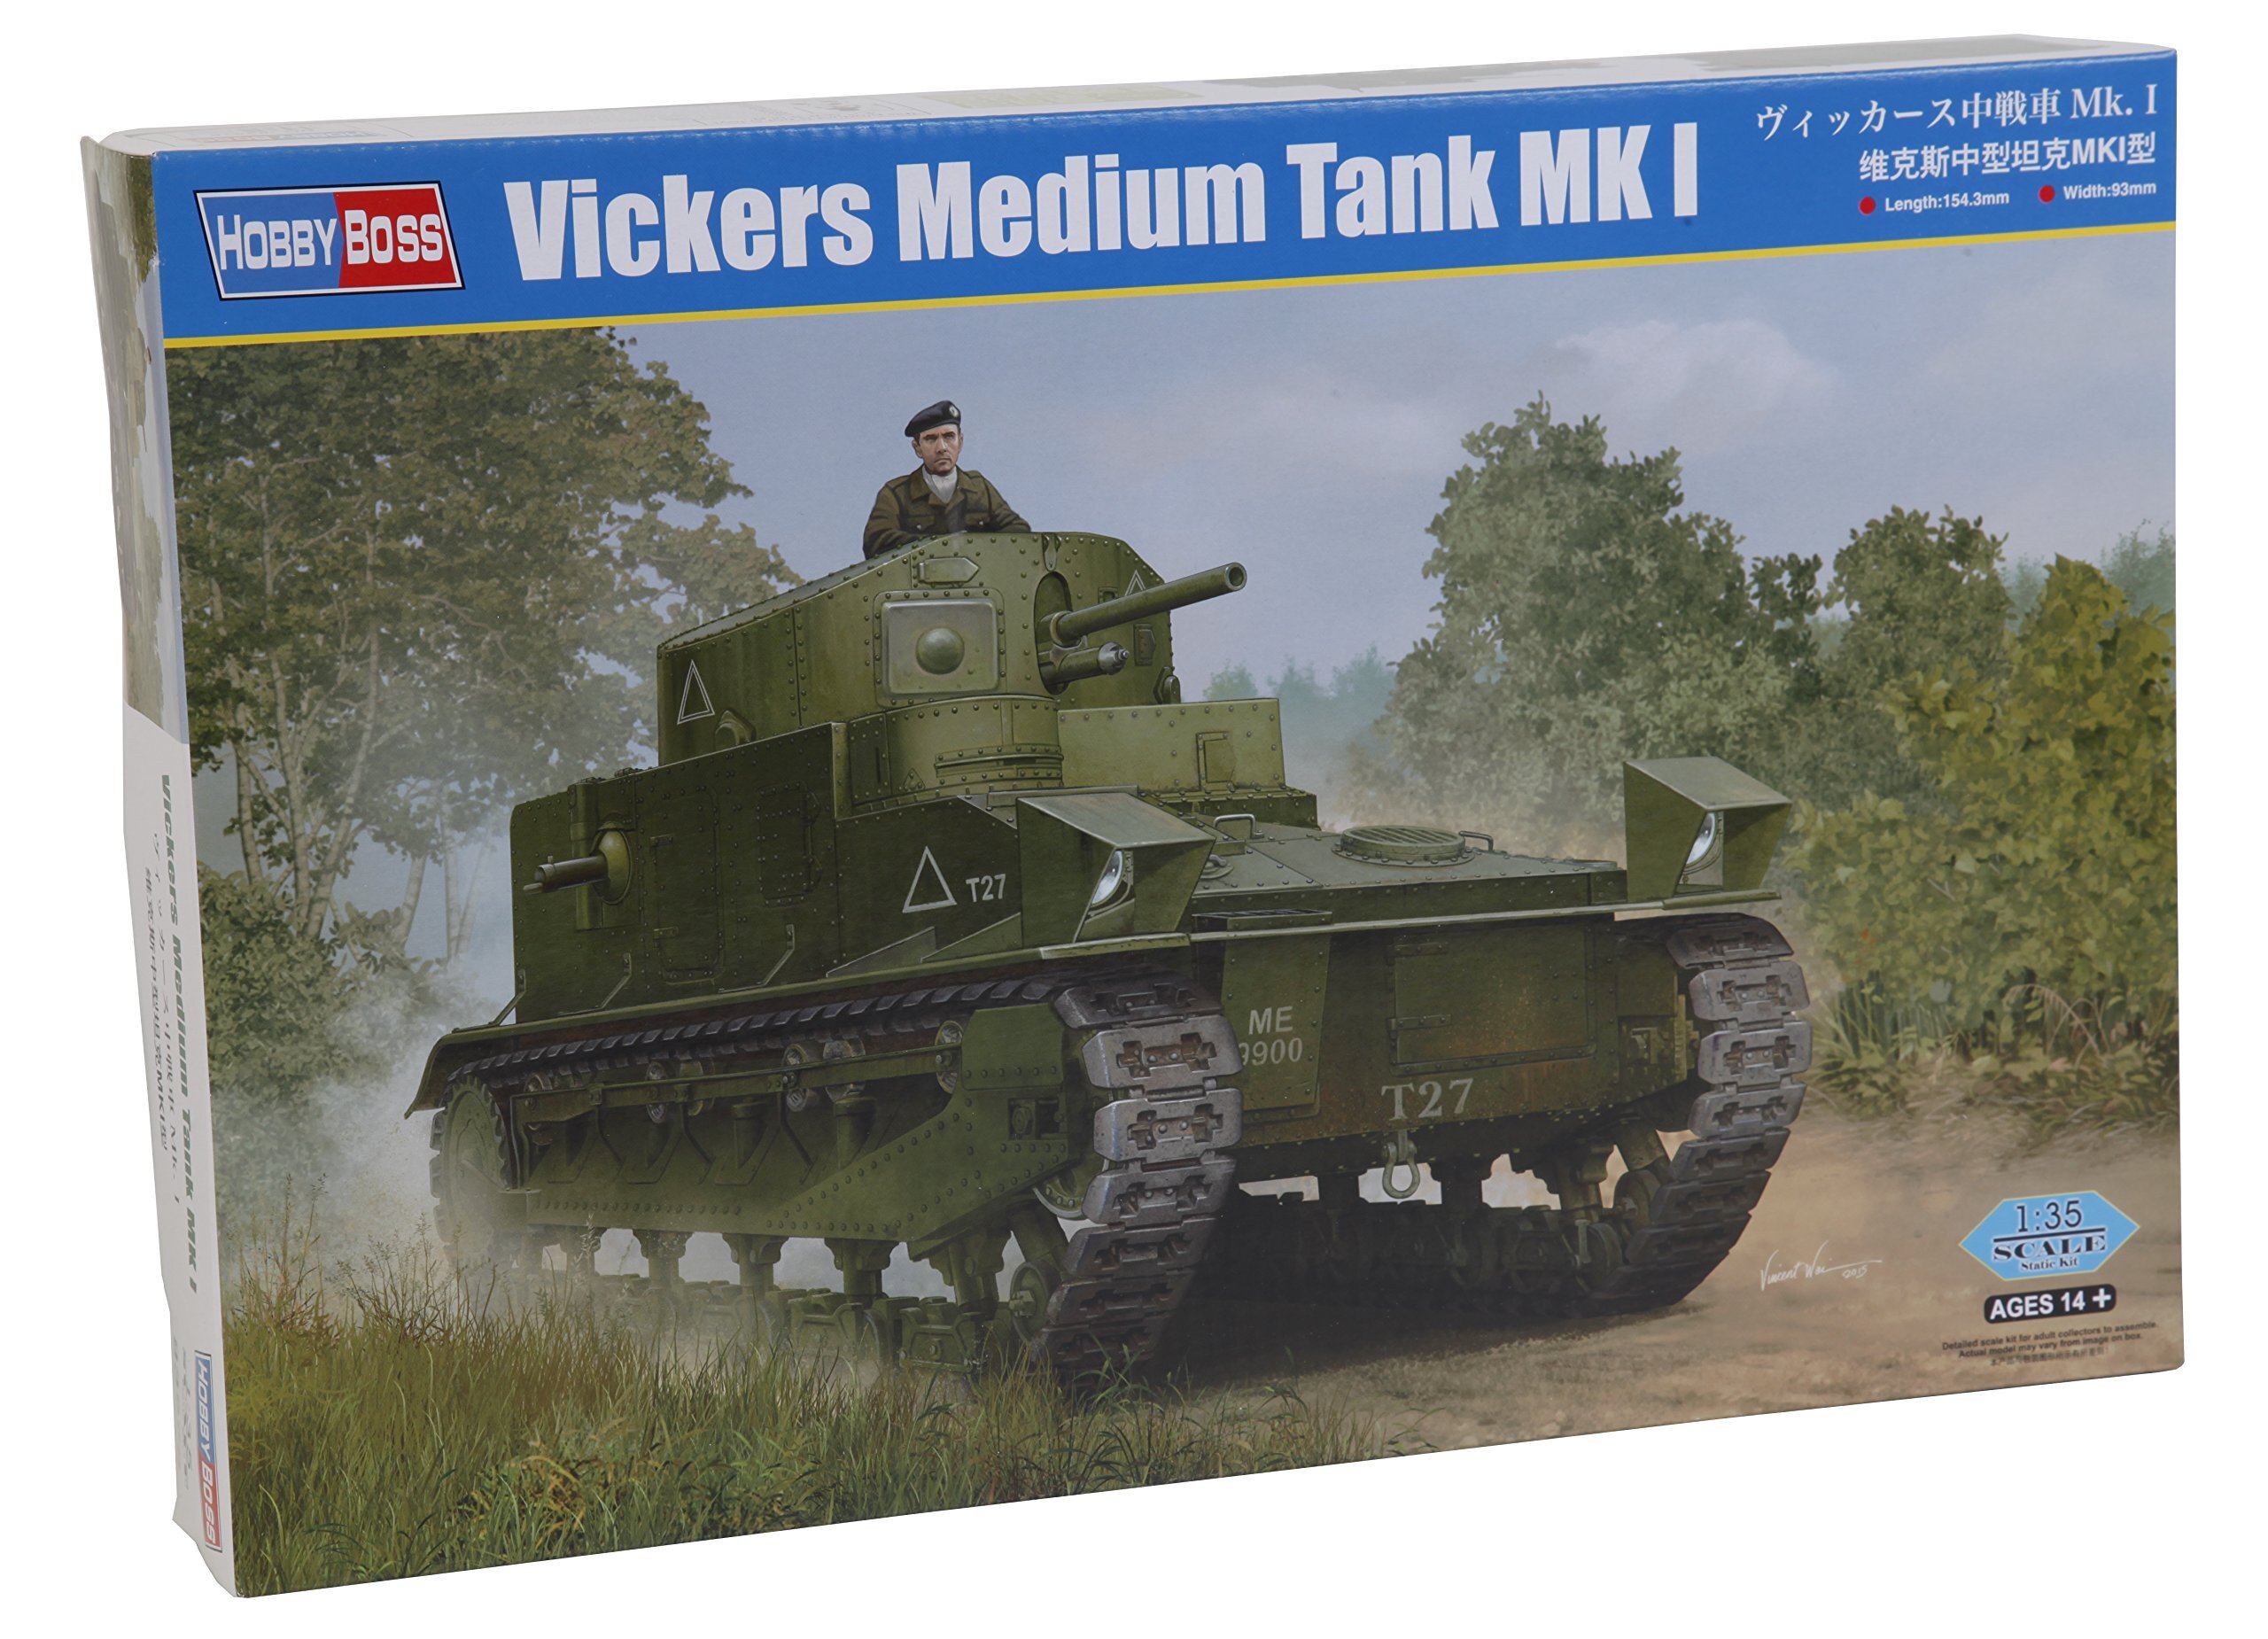 Hobbyboss Vickers Medium Tank MKI